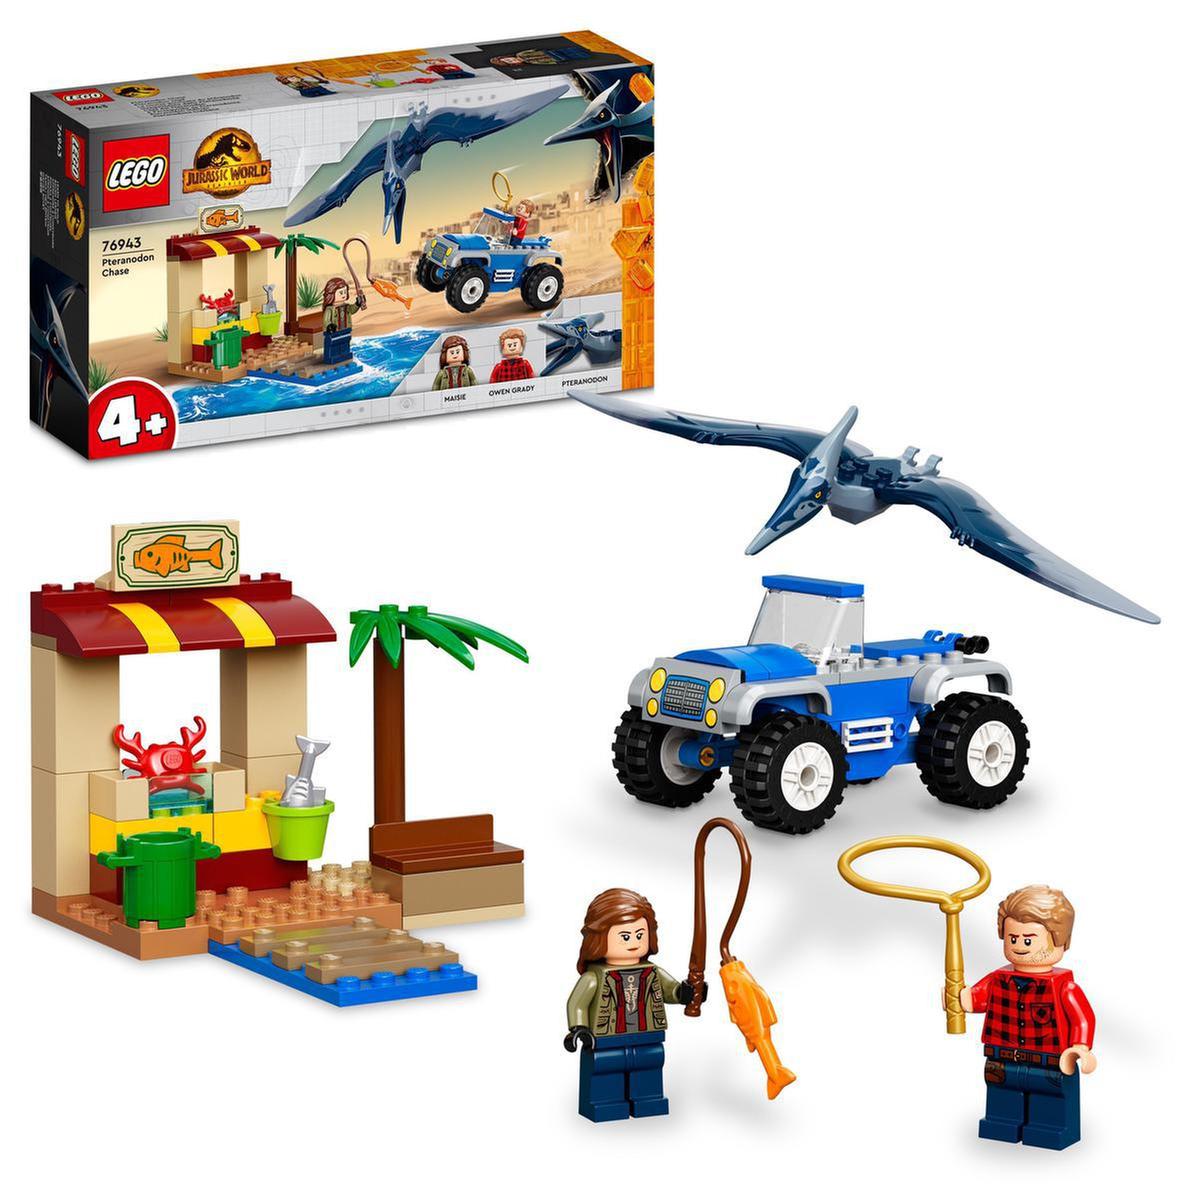 LEGO Jurassic World - A perseguição ao Pteranodonte - 76943 | LEGO DINO |  Loja de brinquedos e videojogos Online Toysrus